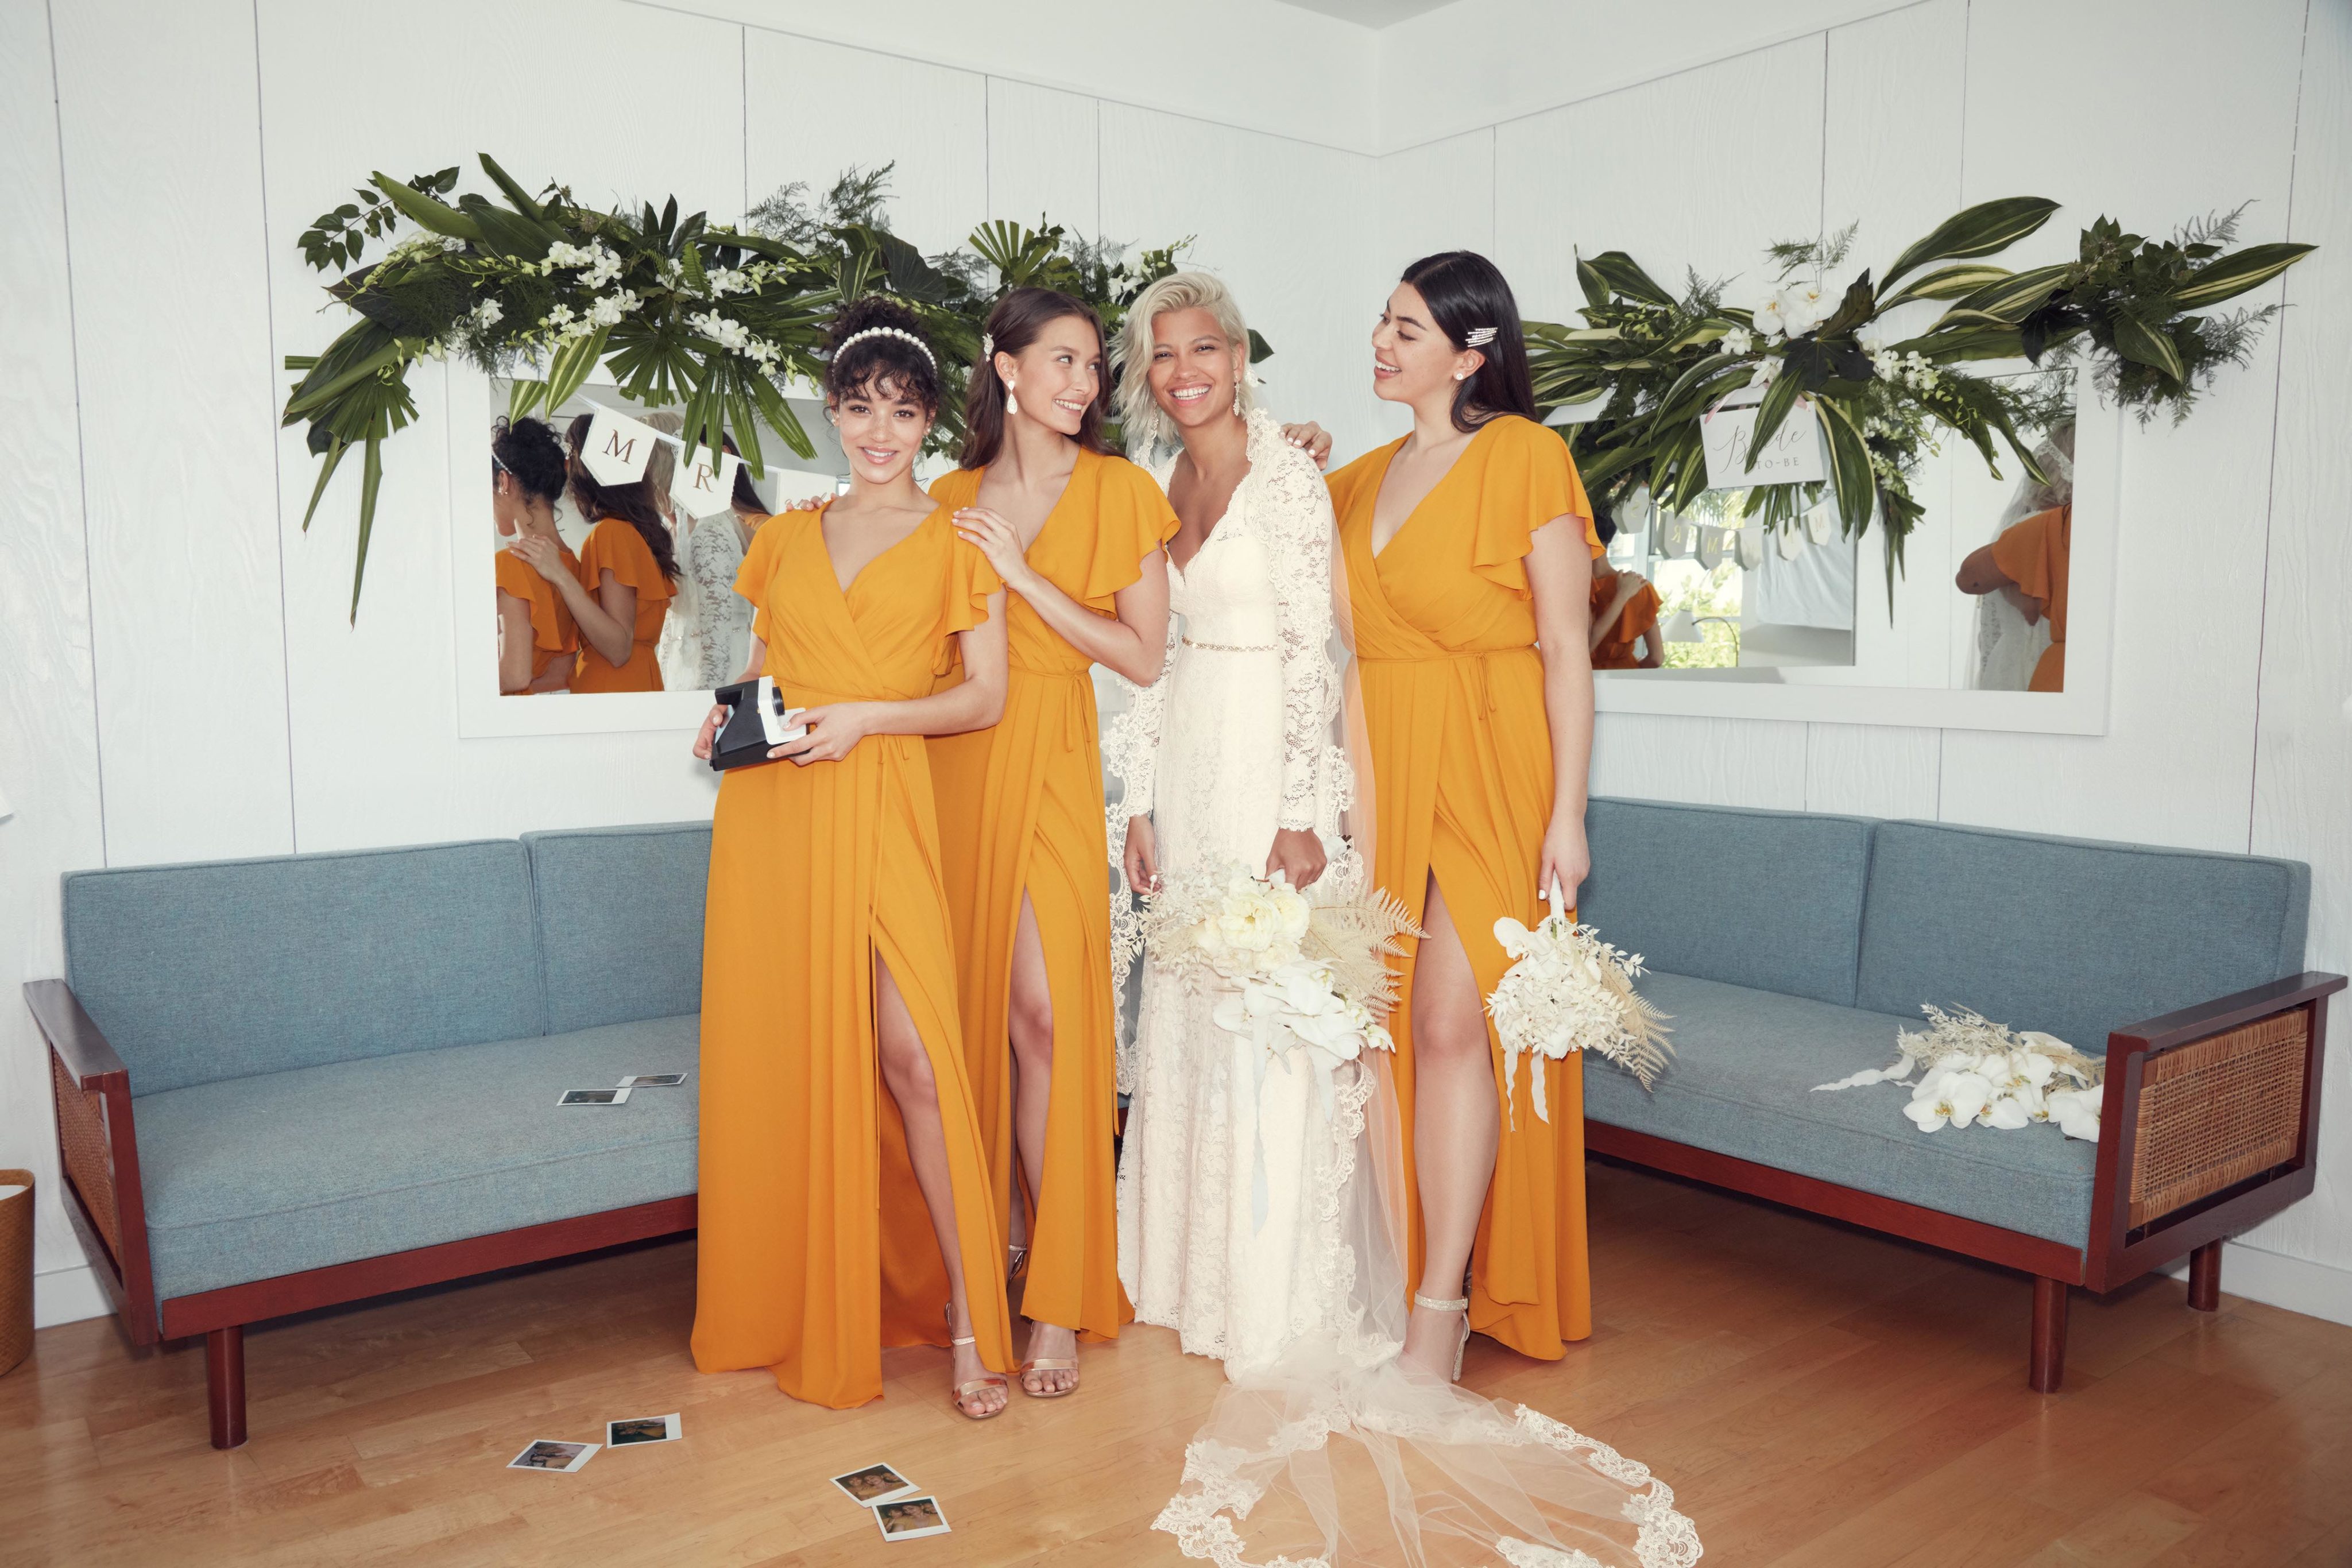 marigold bridesmaid dress